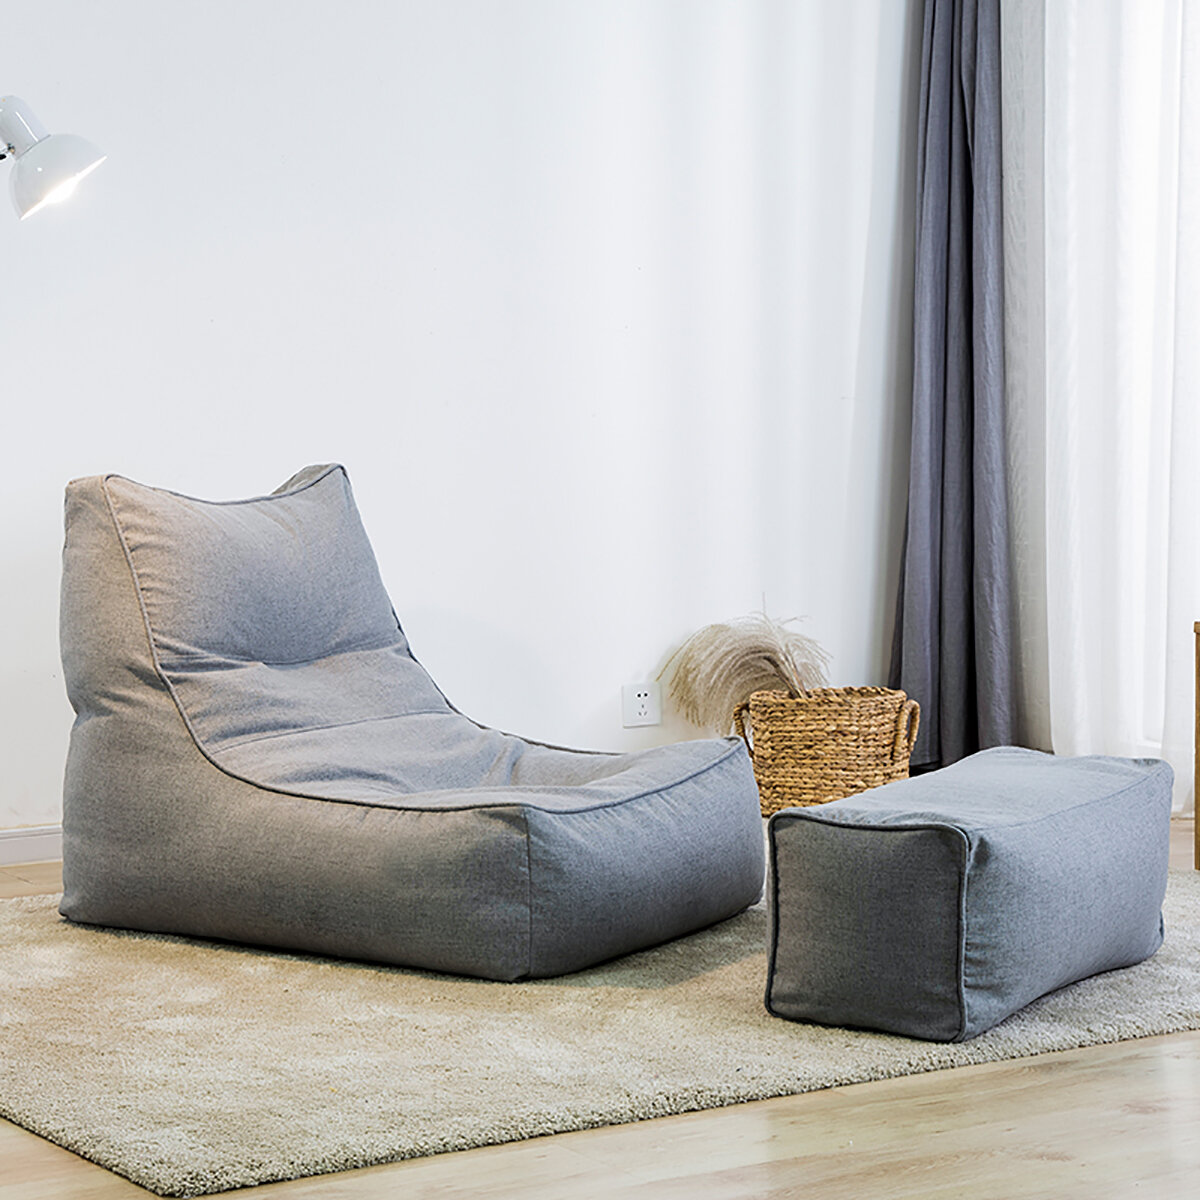 

Large Bean Сумка Комбинированные диваны, чехлы на стулья Внутренний ленивый лежак Водонепроницаемы Игровая кровать-кресл